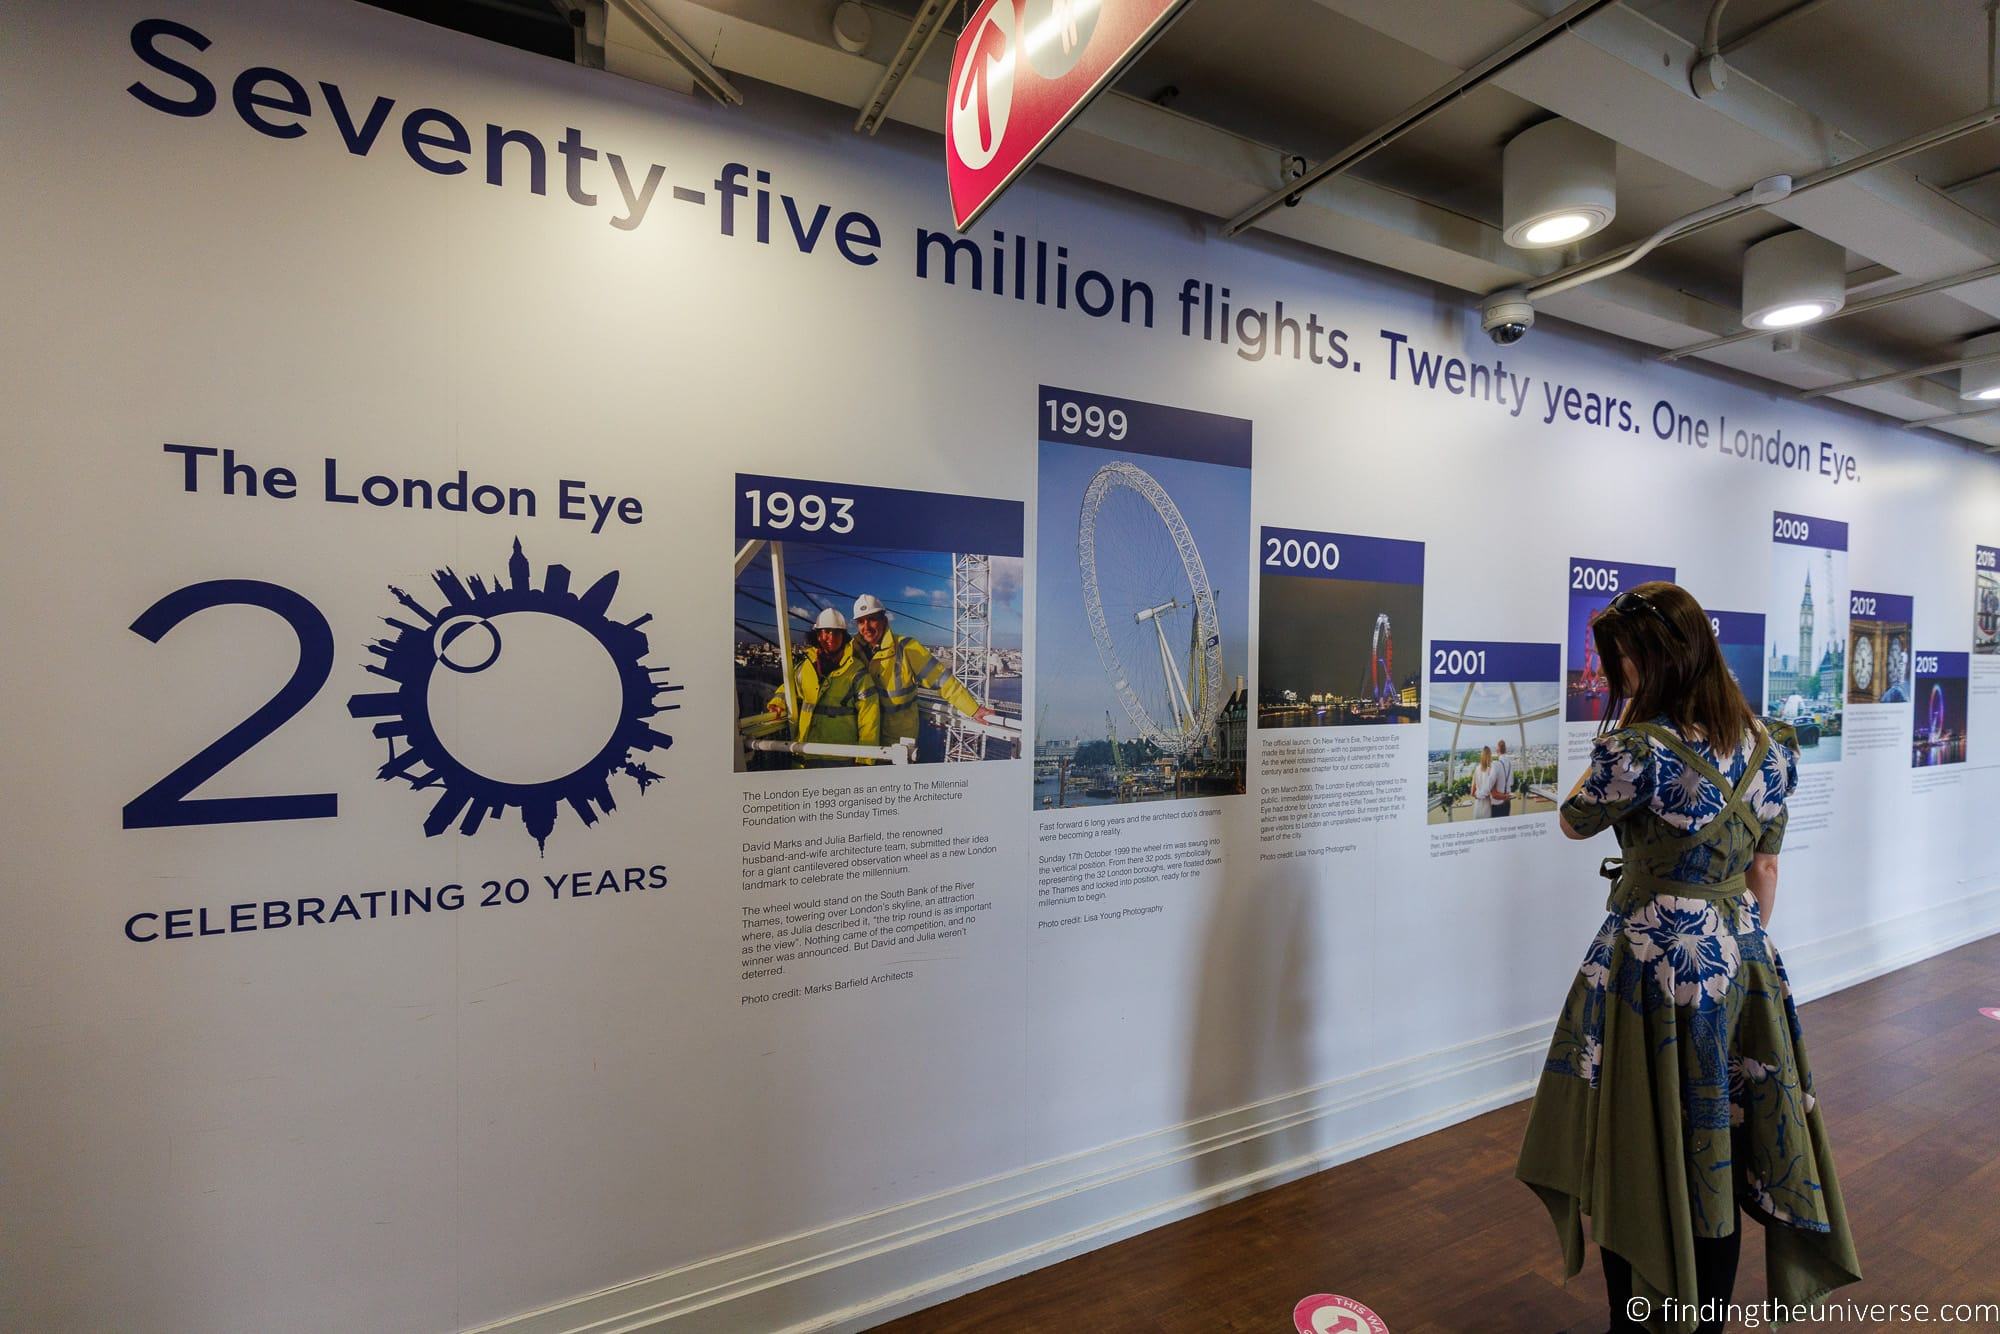 London Eye information board